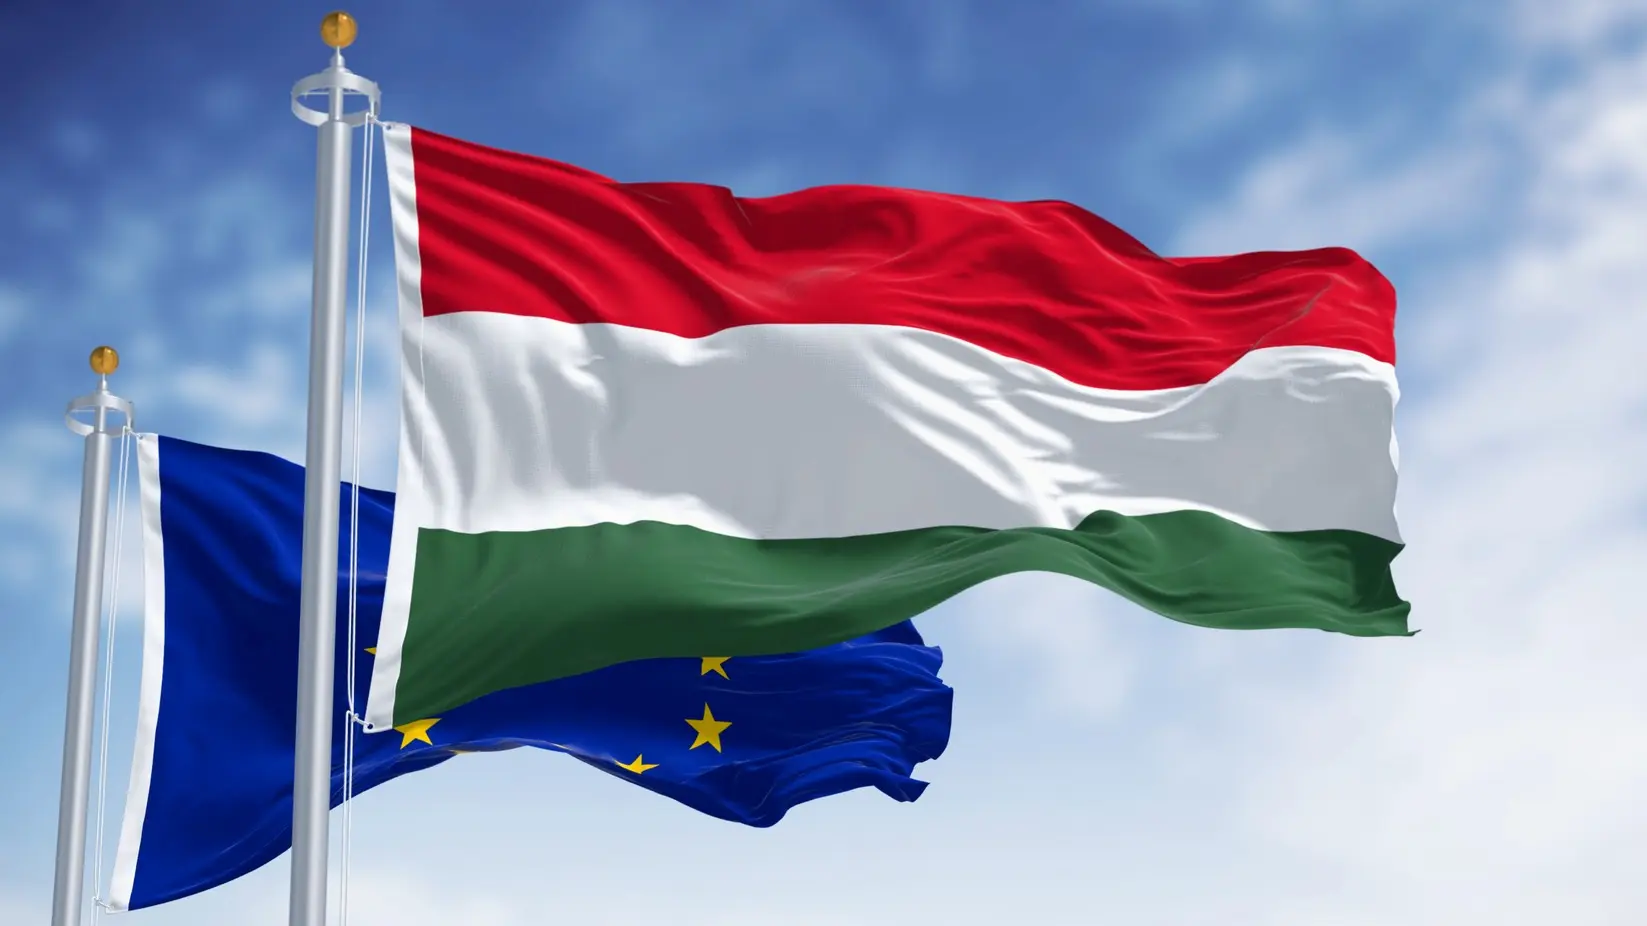 mađarska, evorpska unija, zastava zastave mađarske, evropske unije - profimedia-668141d7d20d0.webp